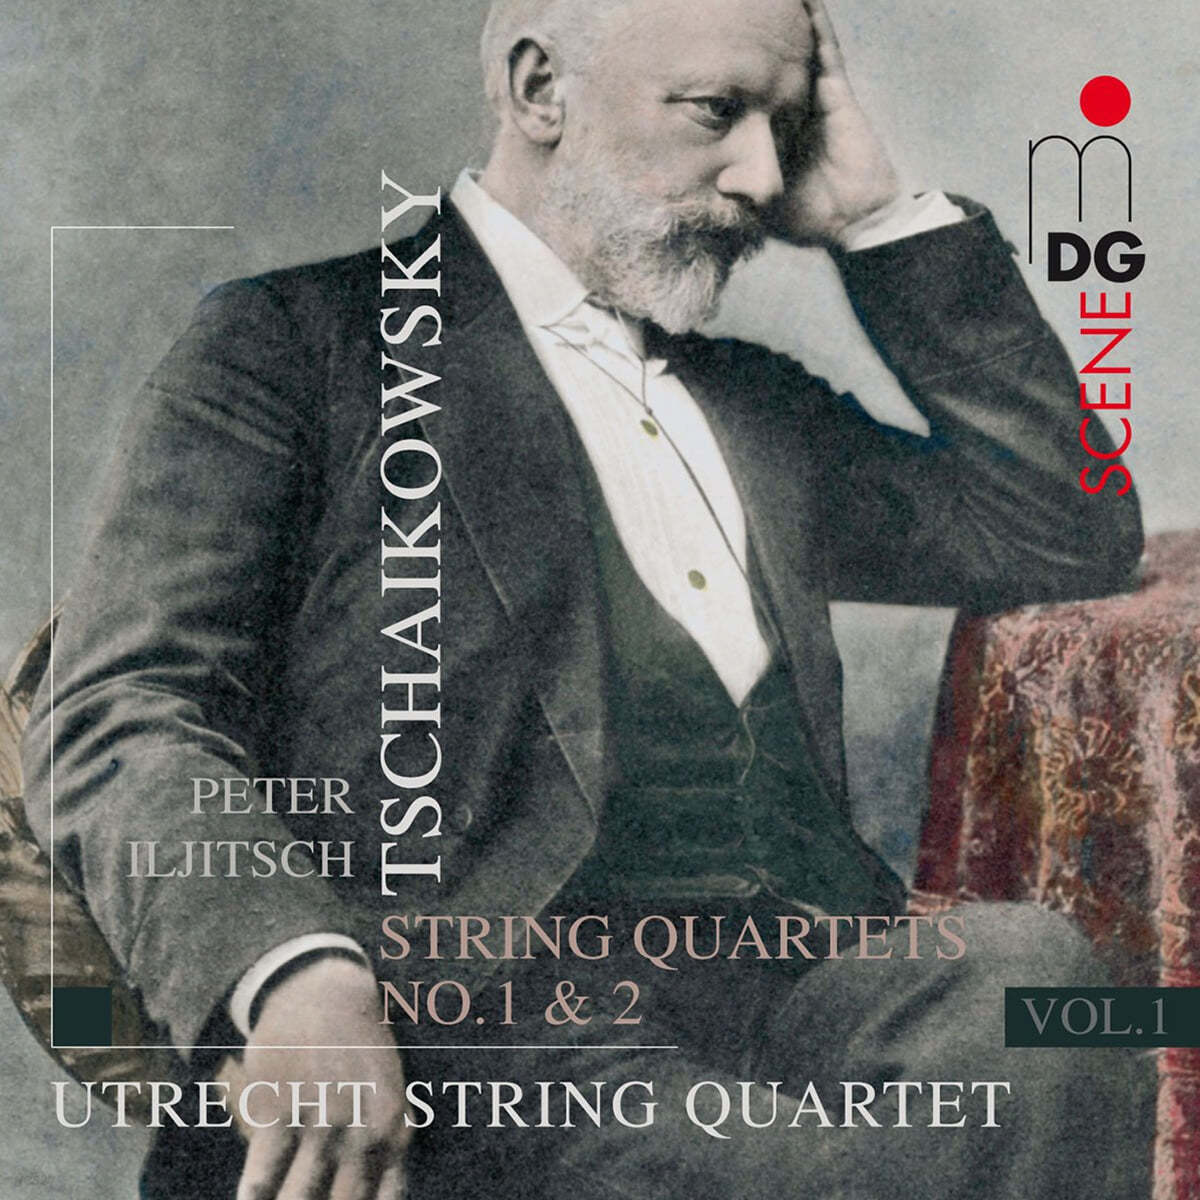 Utrecht String Quartet 차이코프스키: 현악 사중주 1, 2번 (Tchaikovsky: String Quartets Op.11, Op.22) 